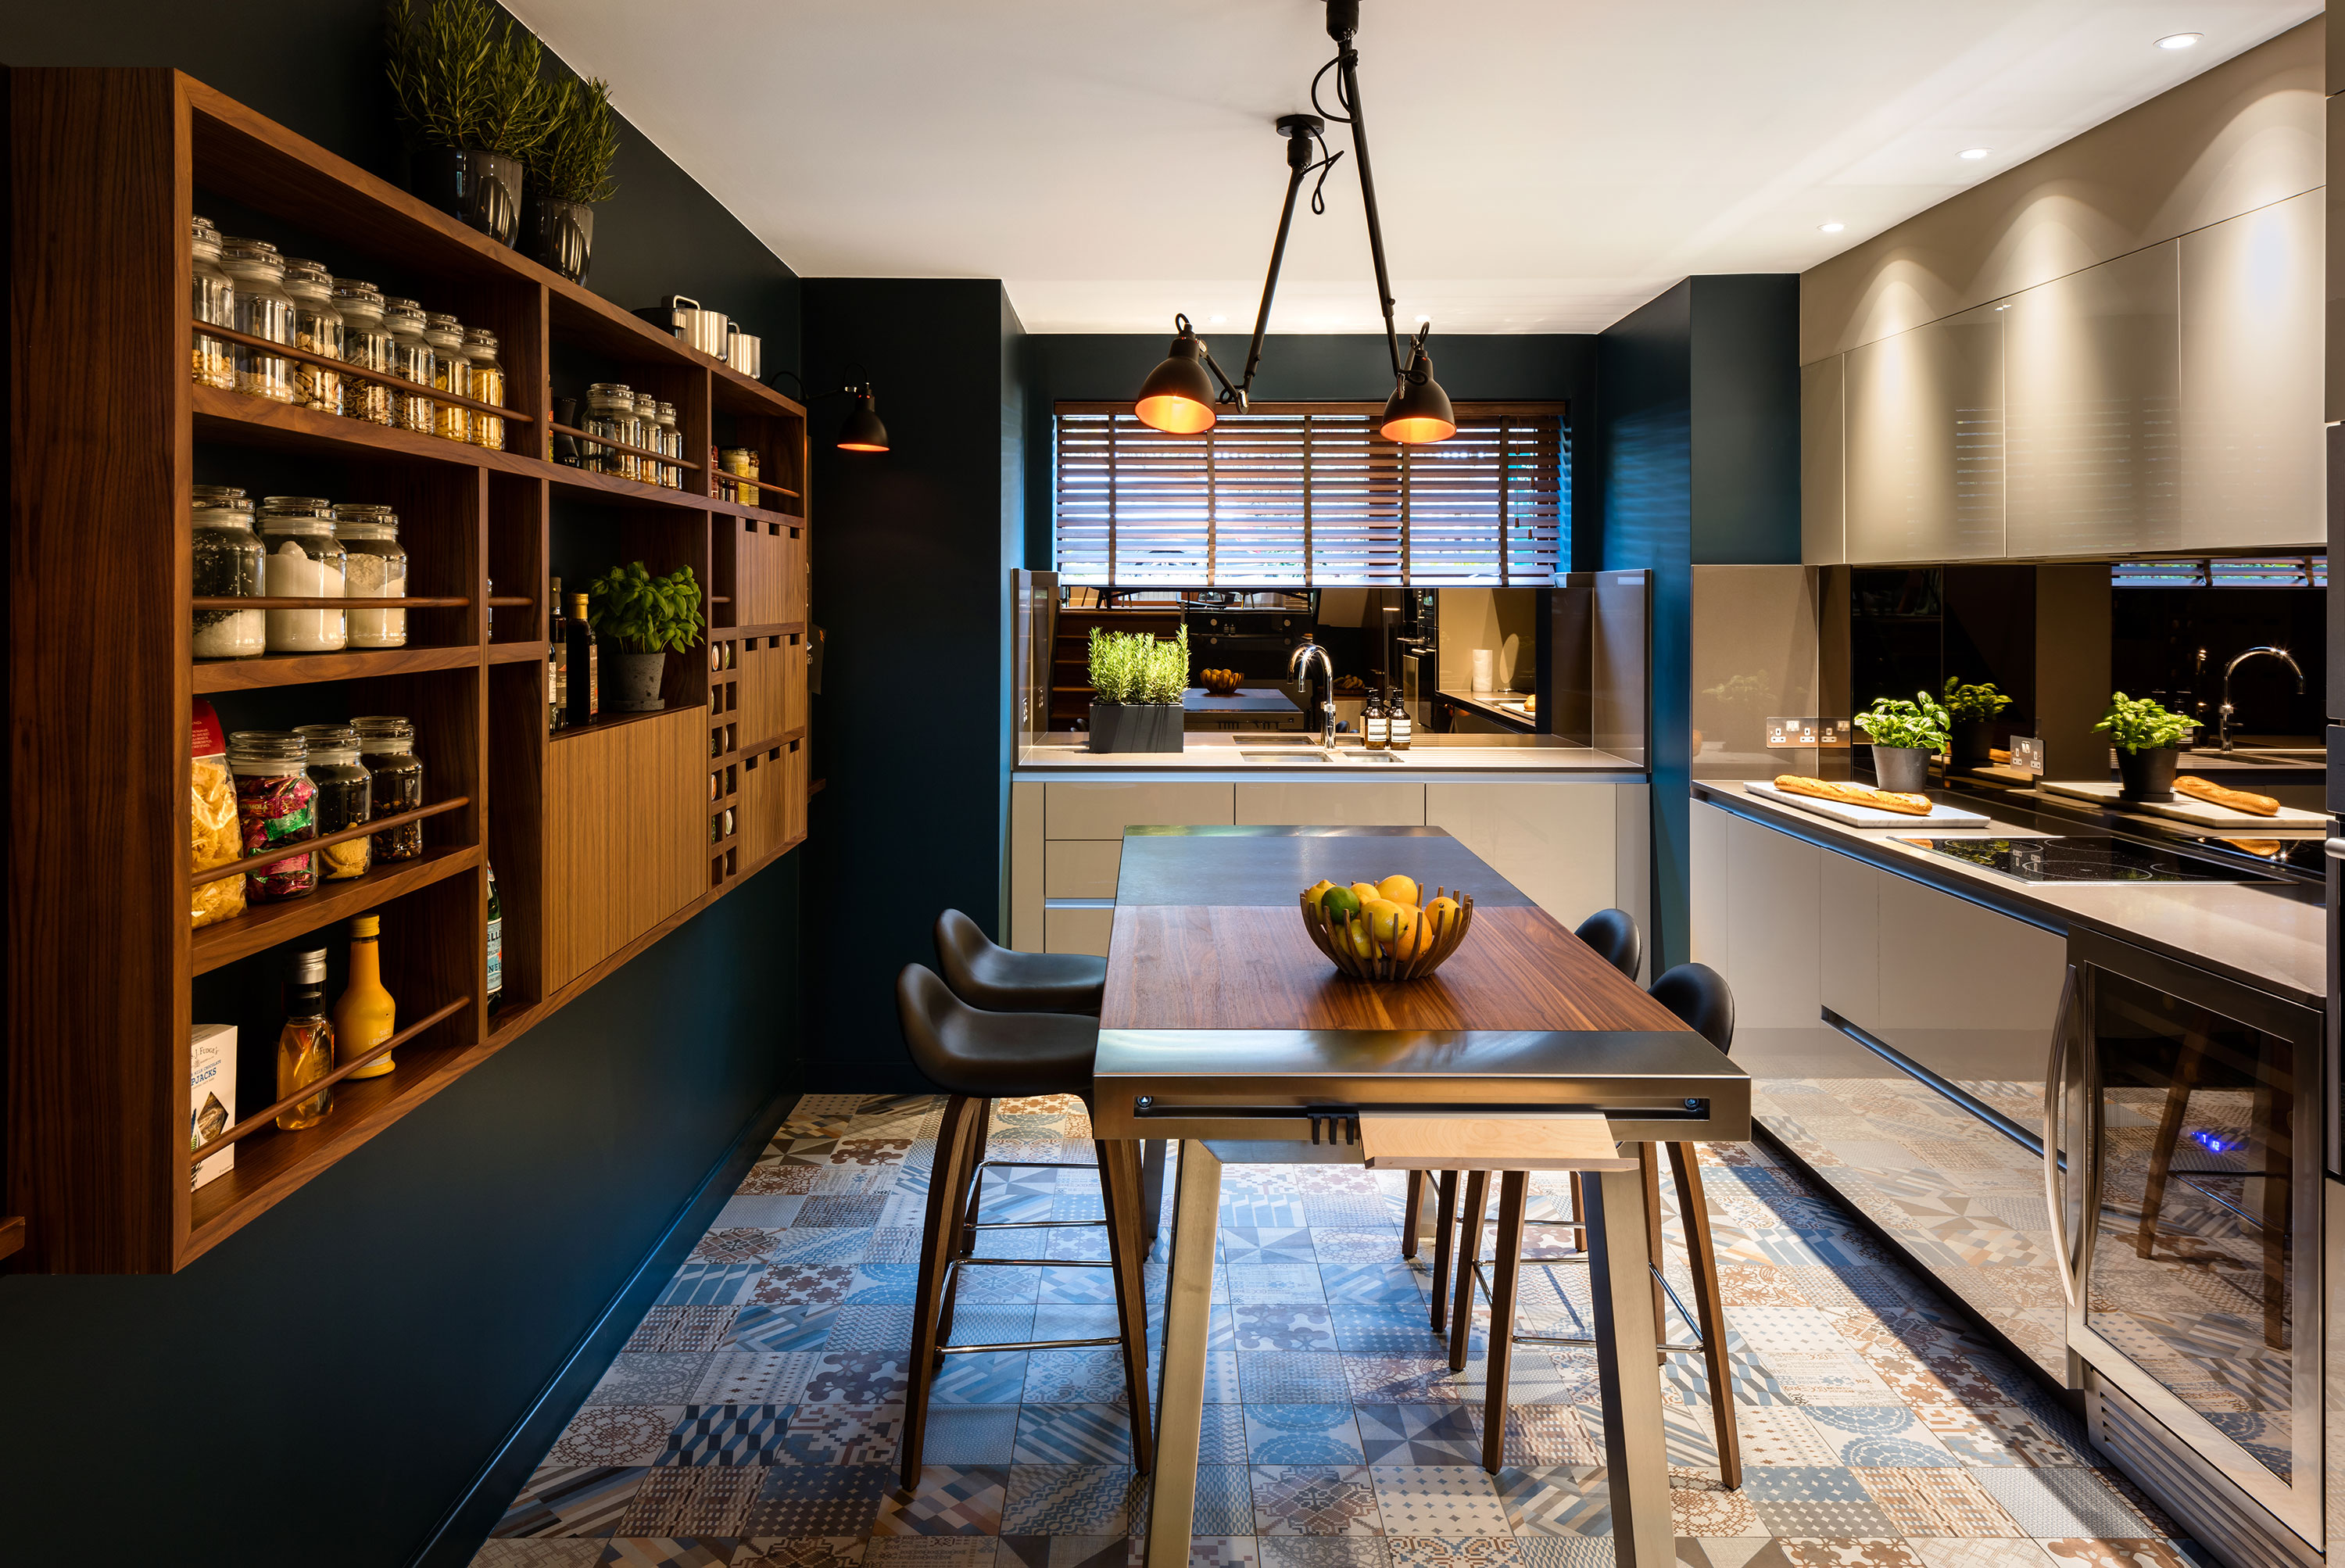 Kitchen, tiled floor, bespoke pantry